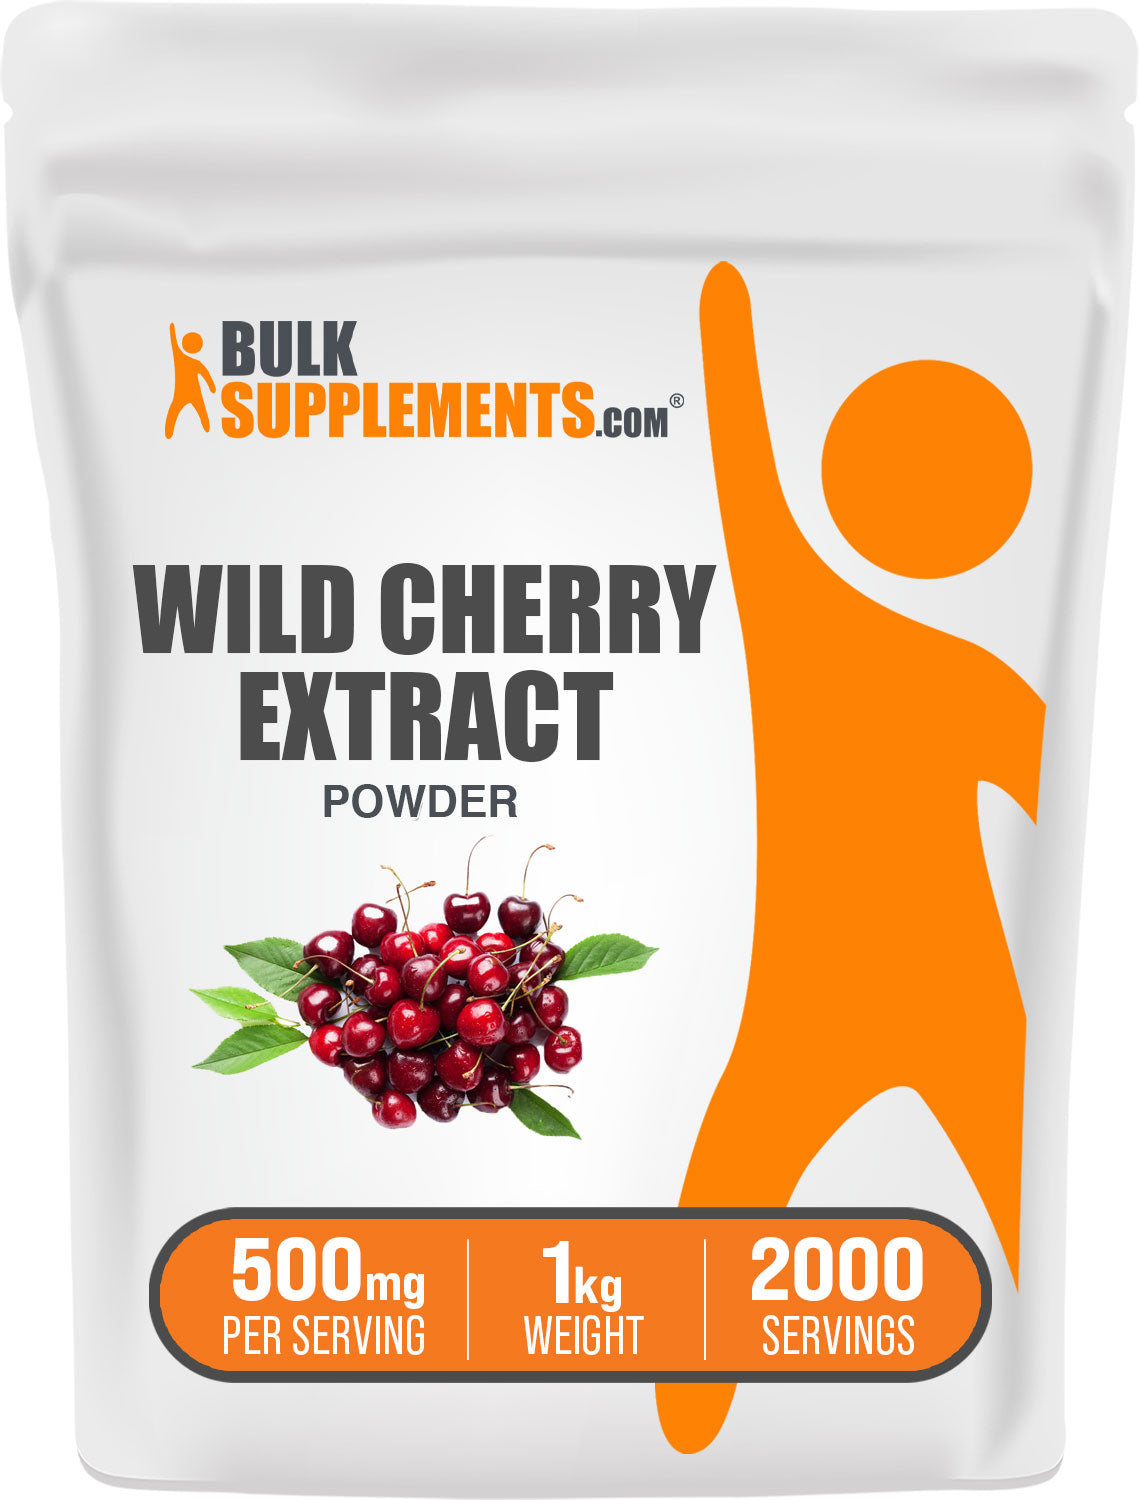 Wild Cherry Extract 1kg Bag